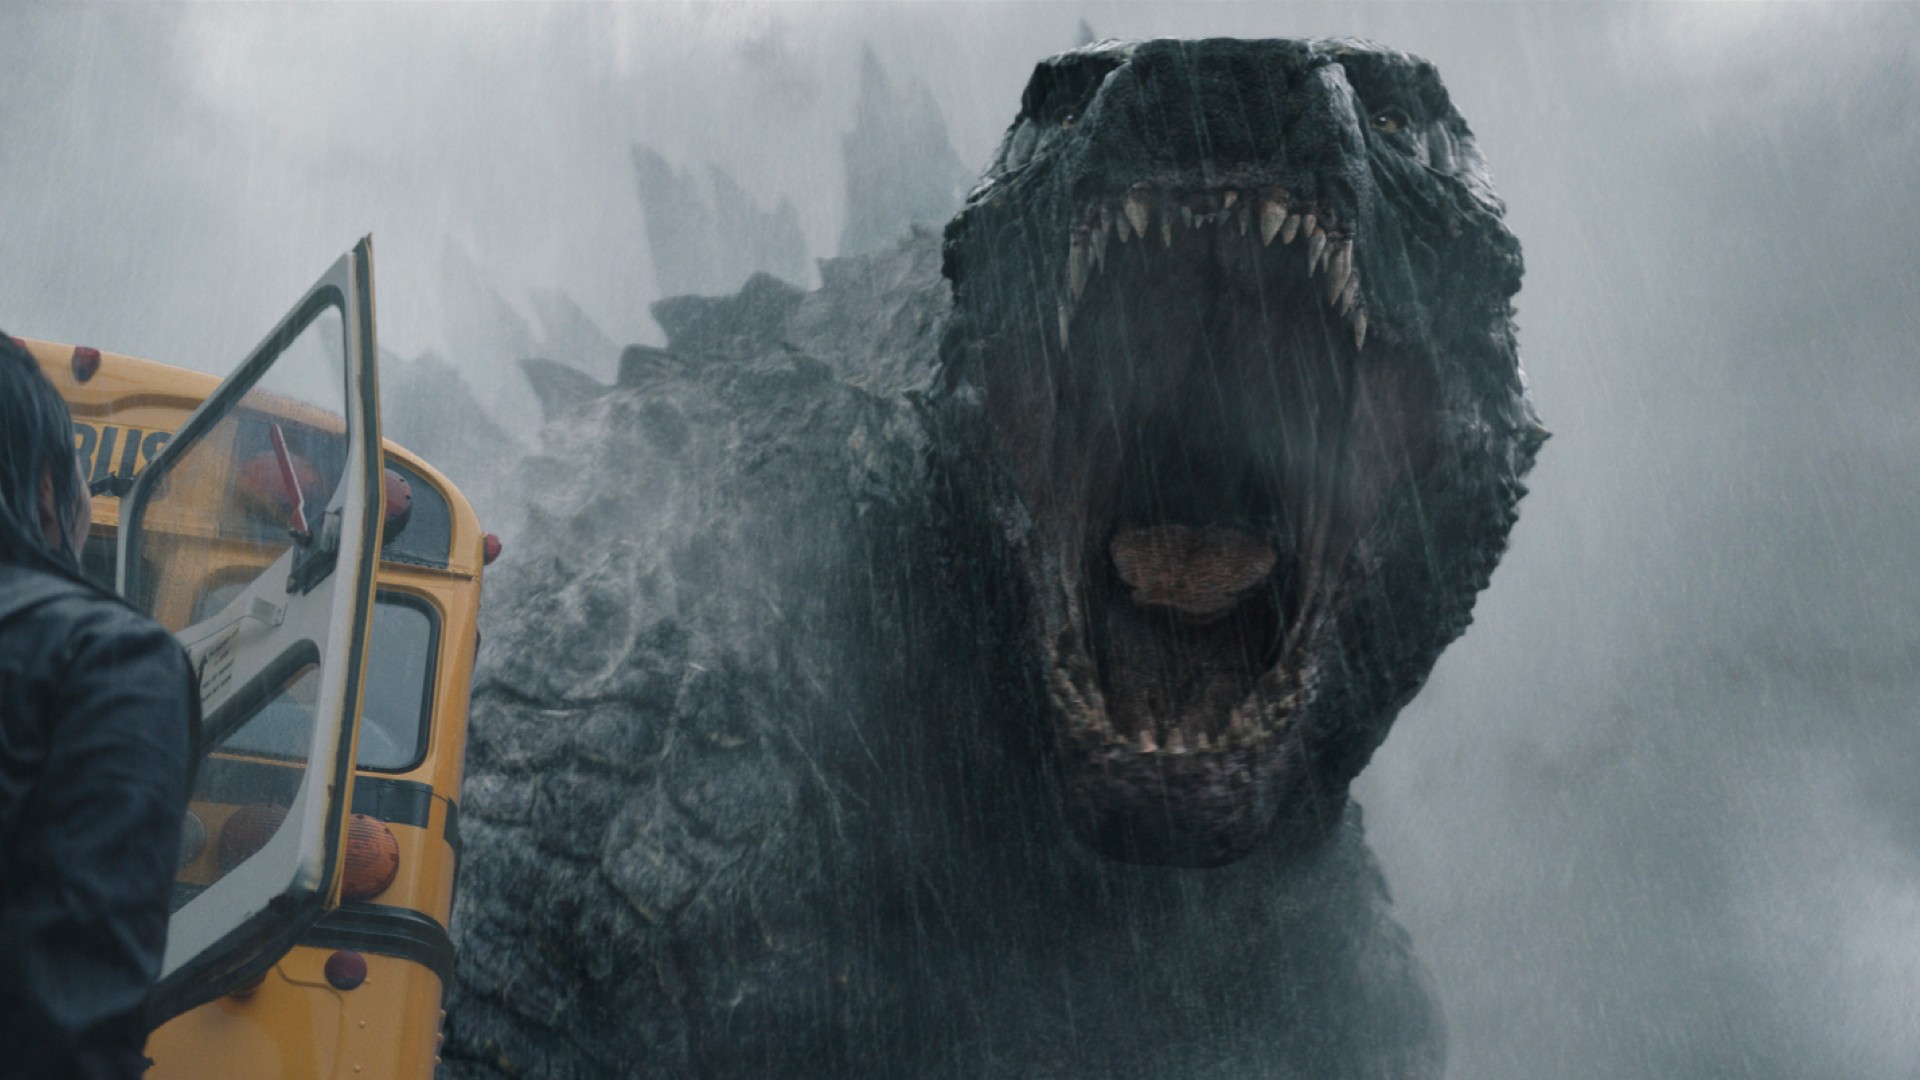 Godzilla roars at a school bus.